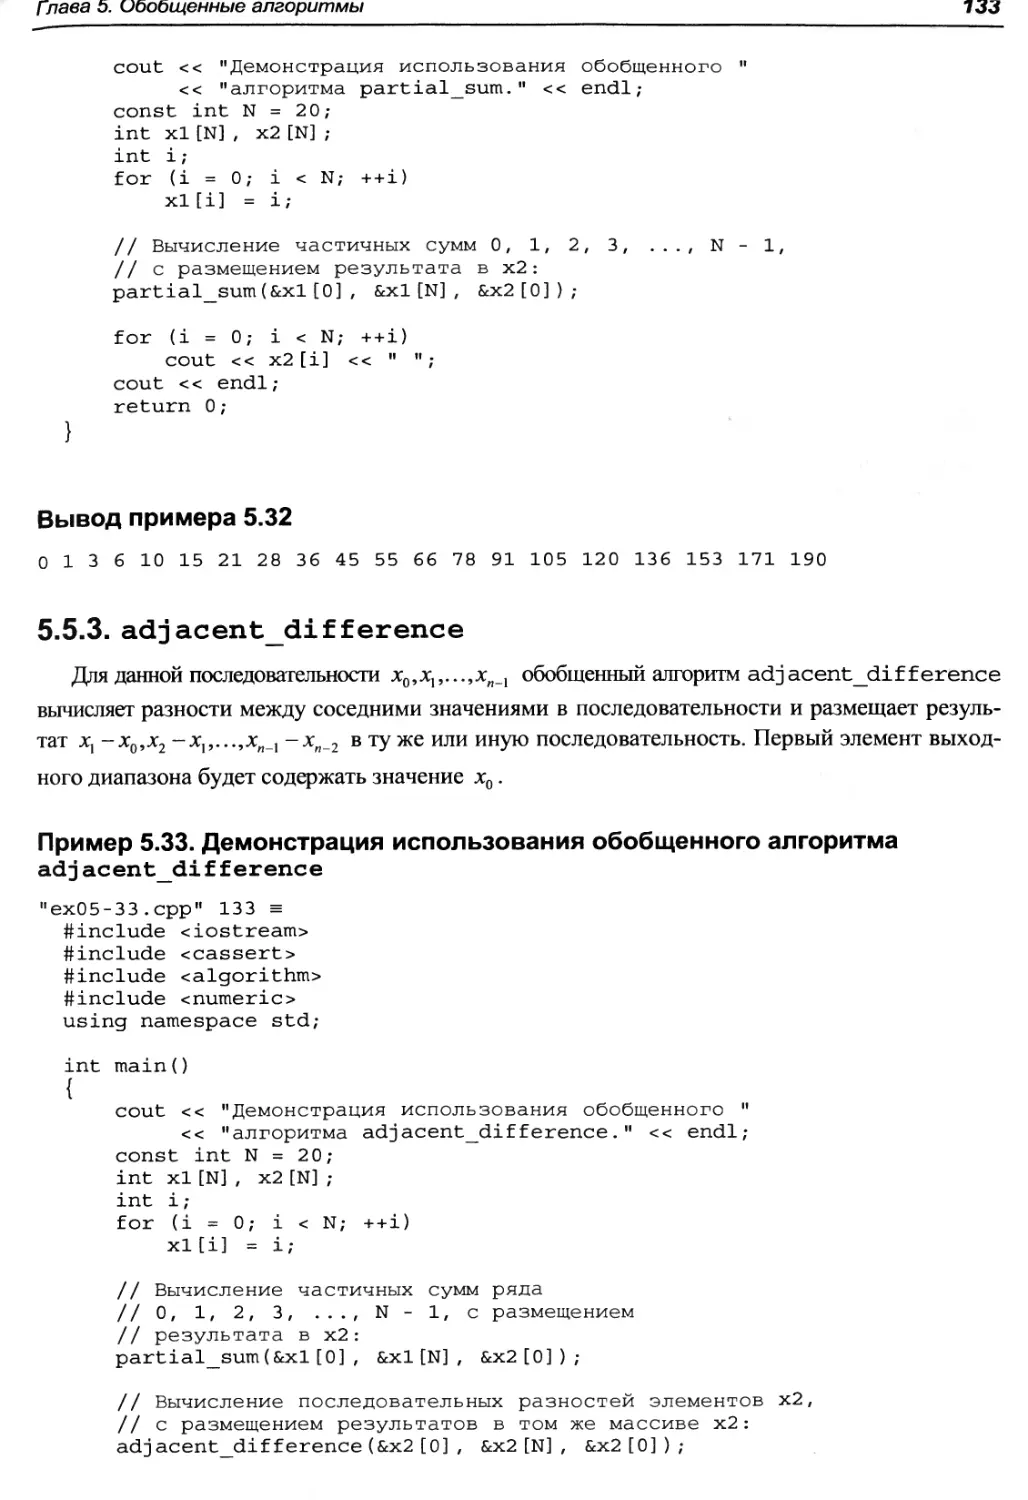 Вывод примера 5.32
Пример 5.33. Демонстрация использования обобщенного алгоритма adjacent_difference
5.5.3. adjacent_difference